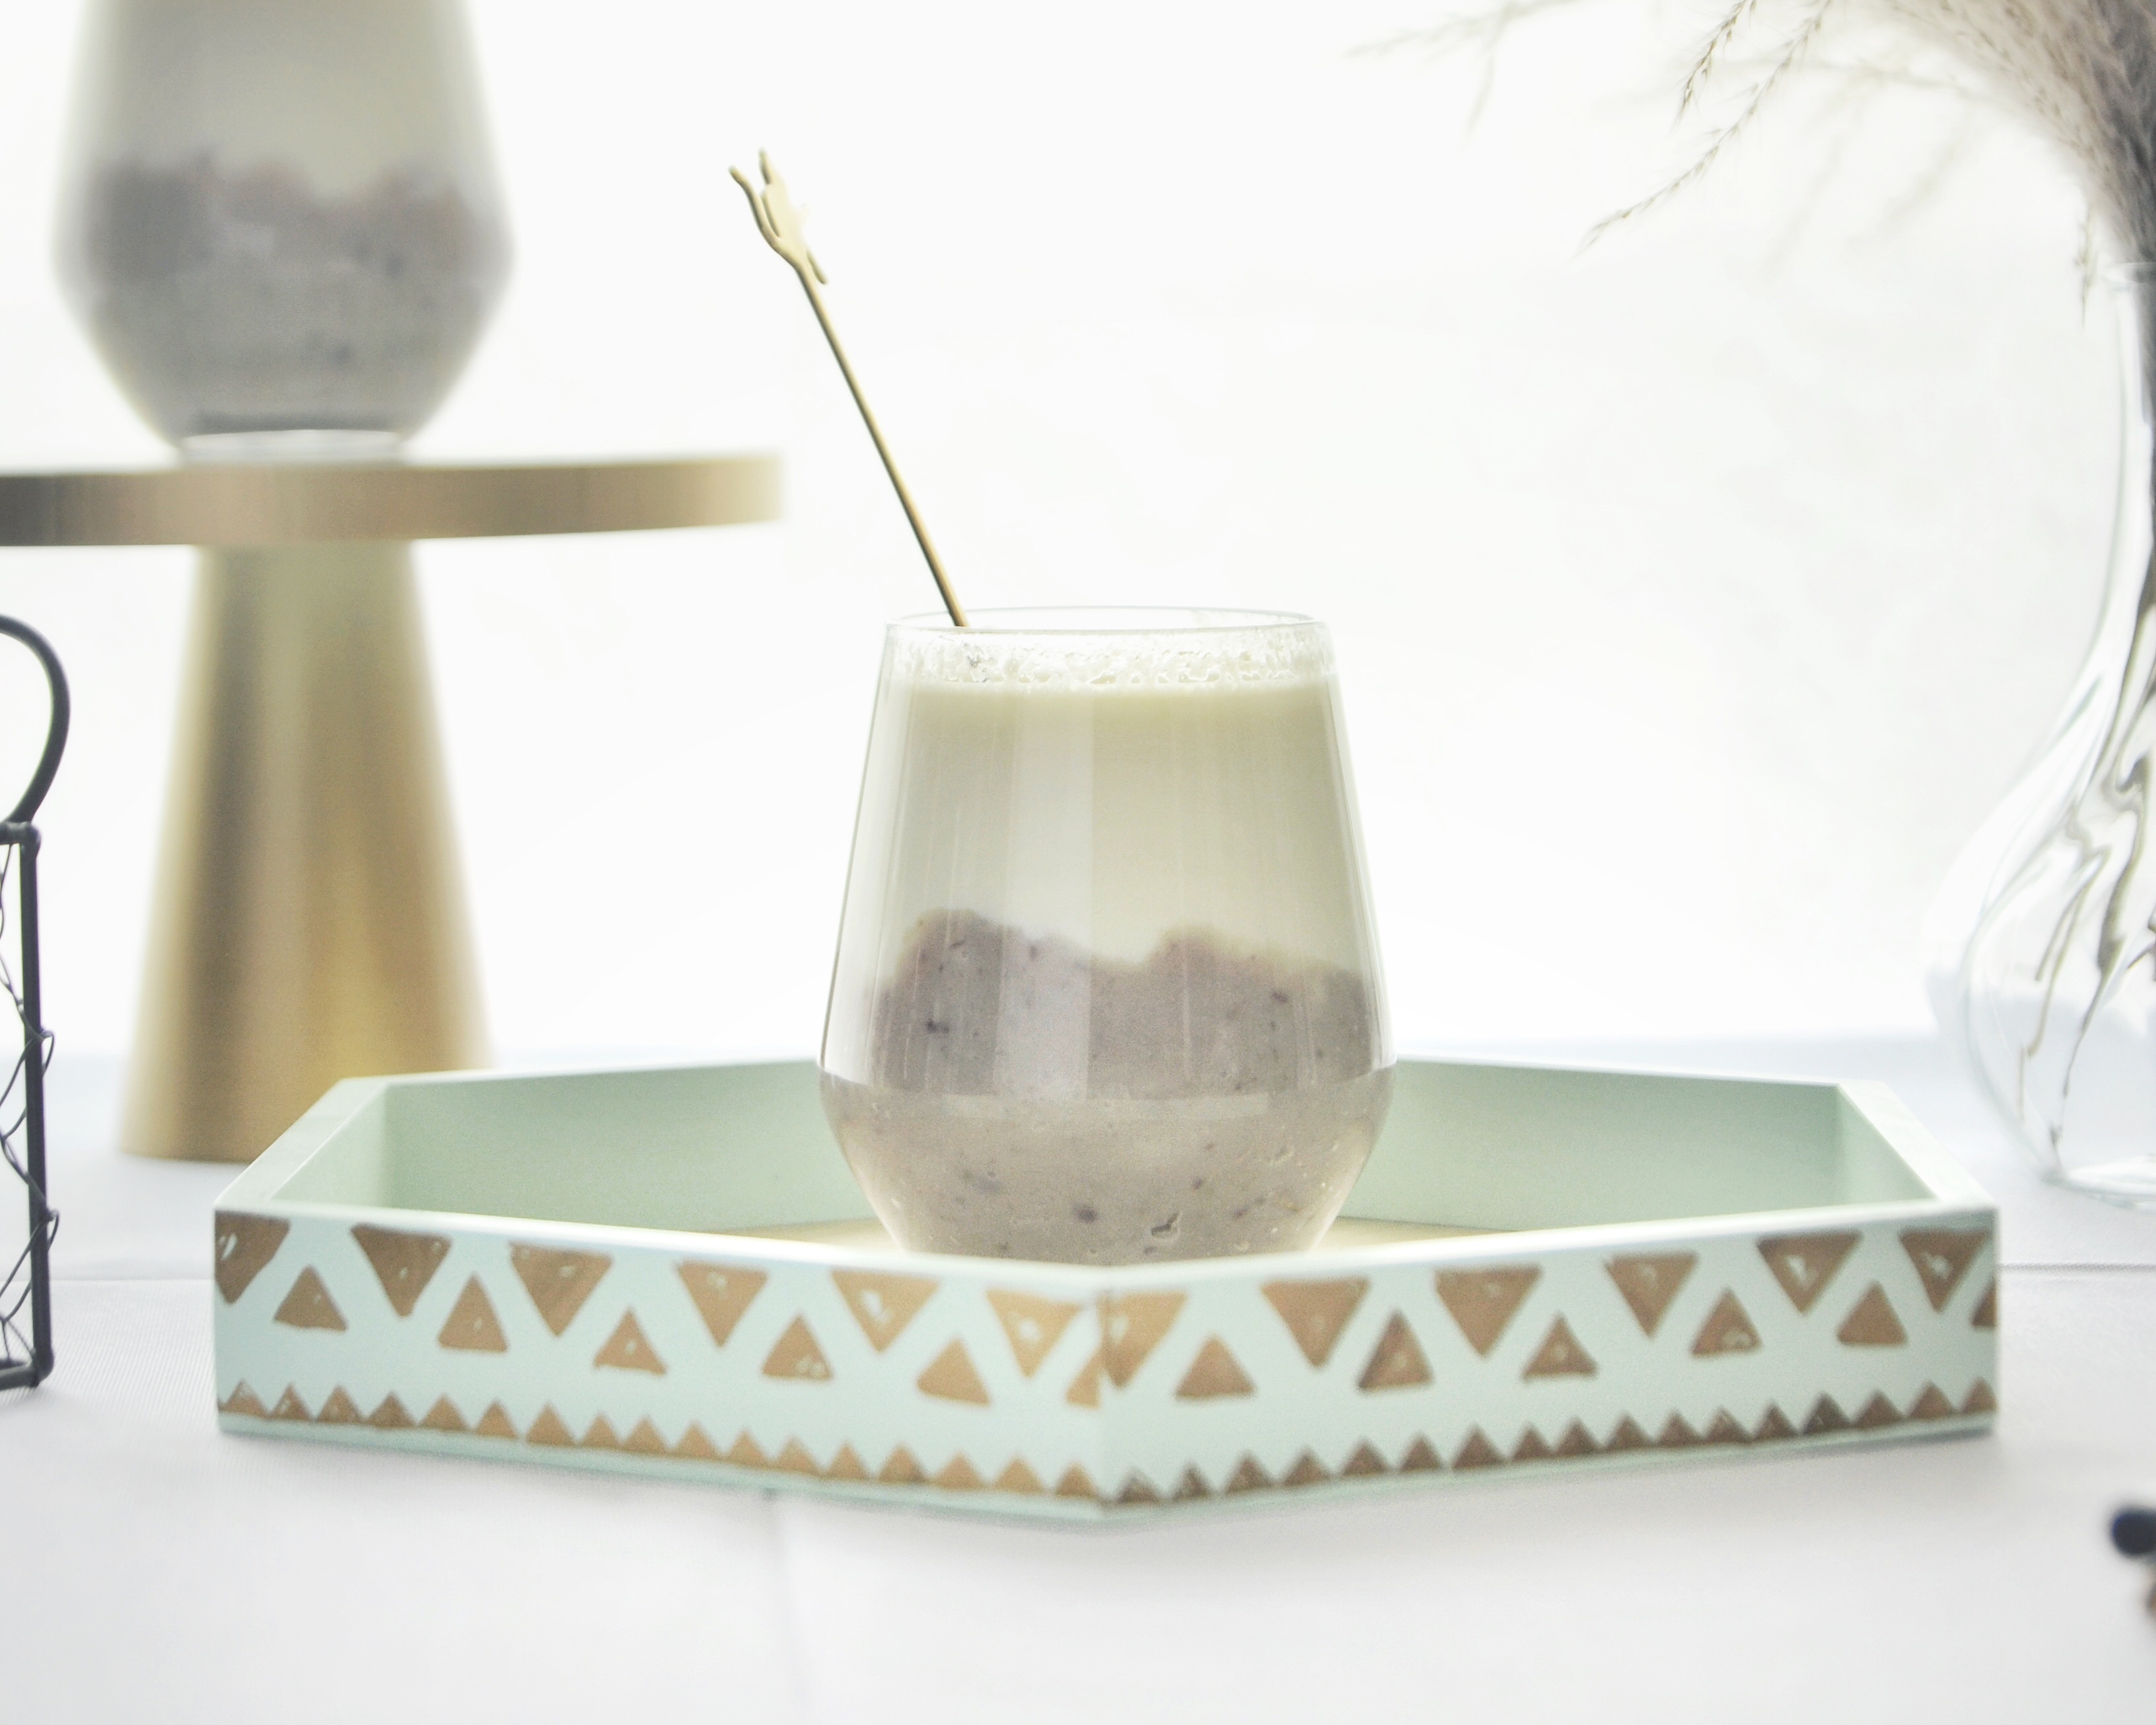 冬季热饮 — 紫薯山药鲜奶